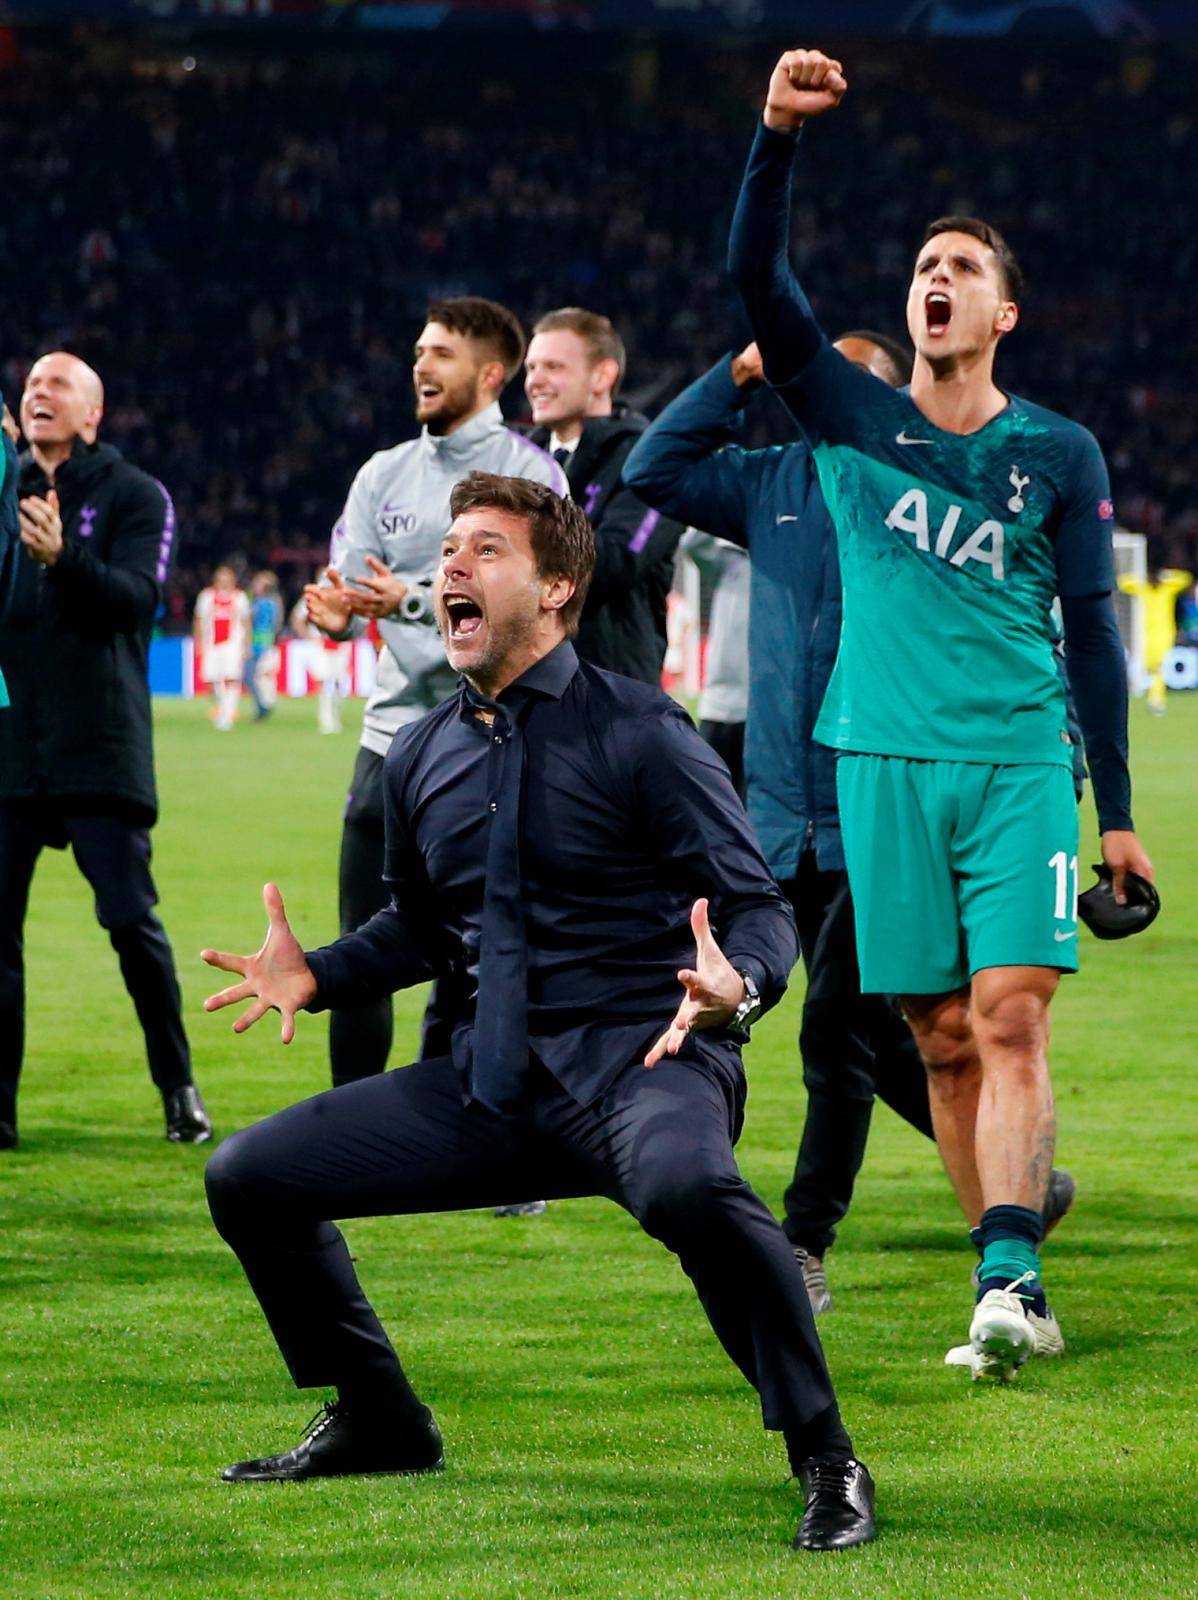 Champions League Semi Final Second Leg - Ajax Amsterdam v Tottenham Hotspur